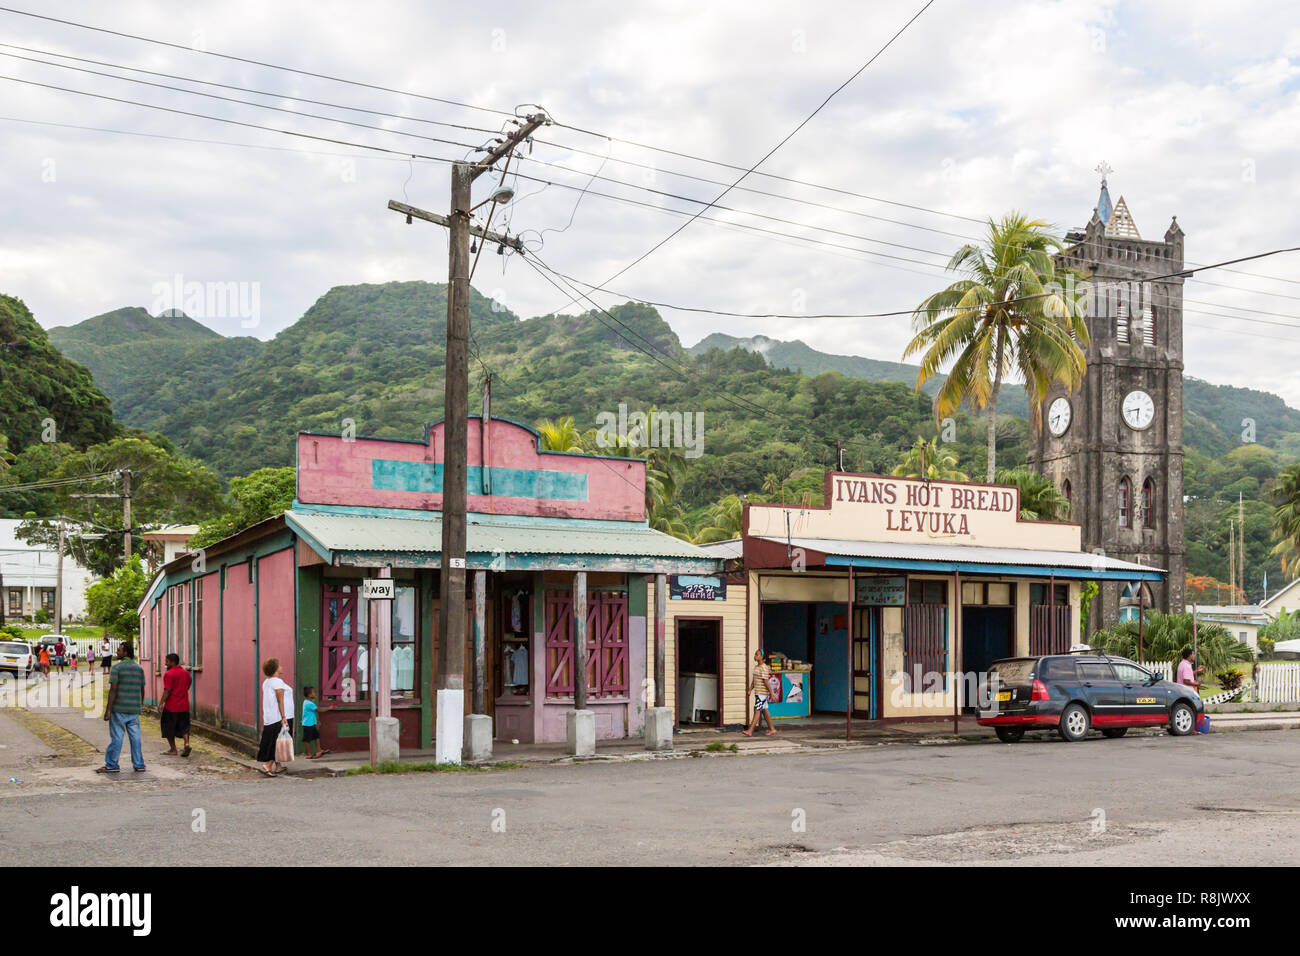 Vibrant de couleurs des rues du vieux capitale coloniale de Fidji : Levuka Ovalau, ville, l'île de l'archipel de Lomaiviti, la Mélanésie, l'Océanie, l'océan Pacifique Sud. Banque D'Images